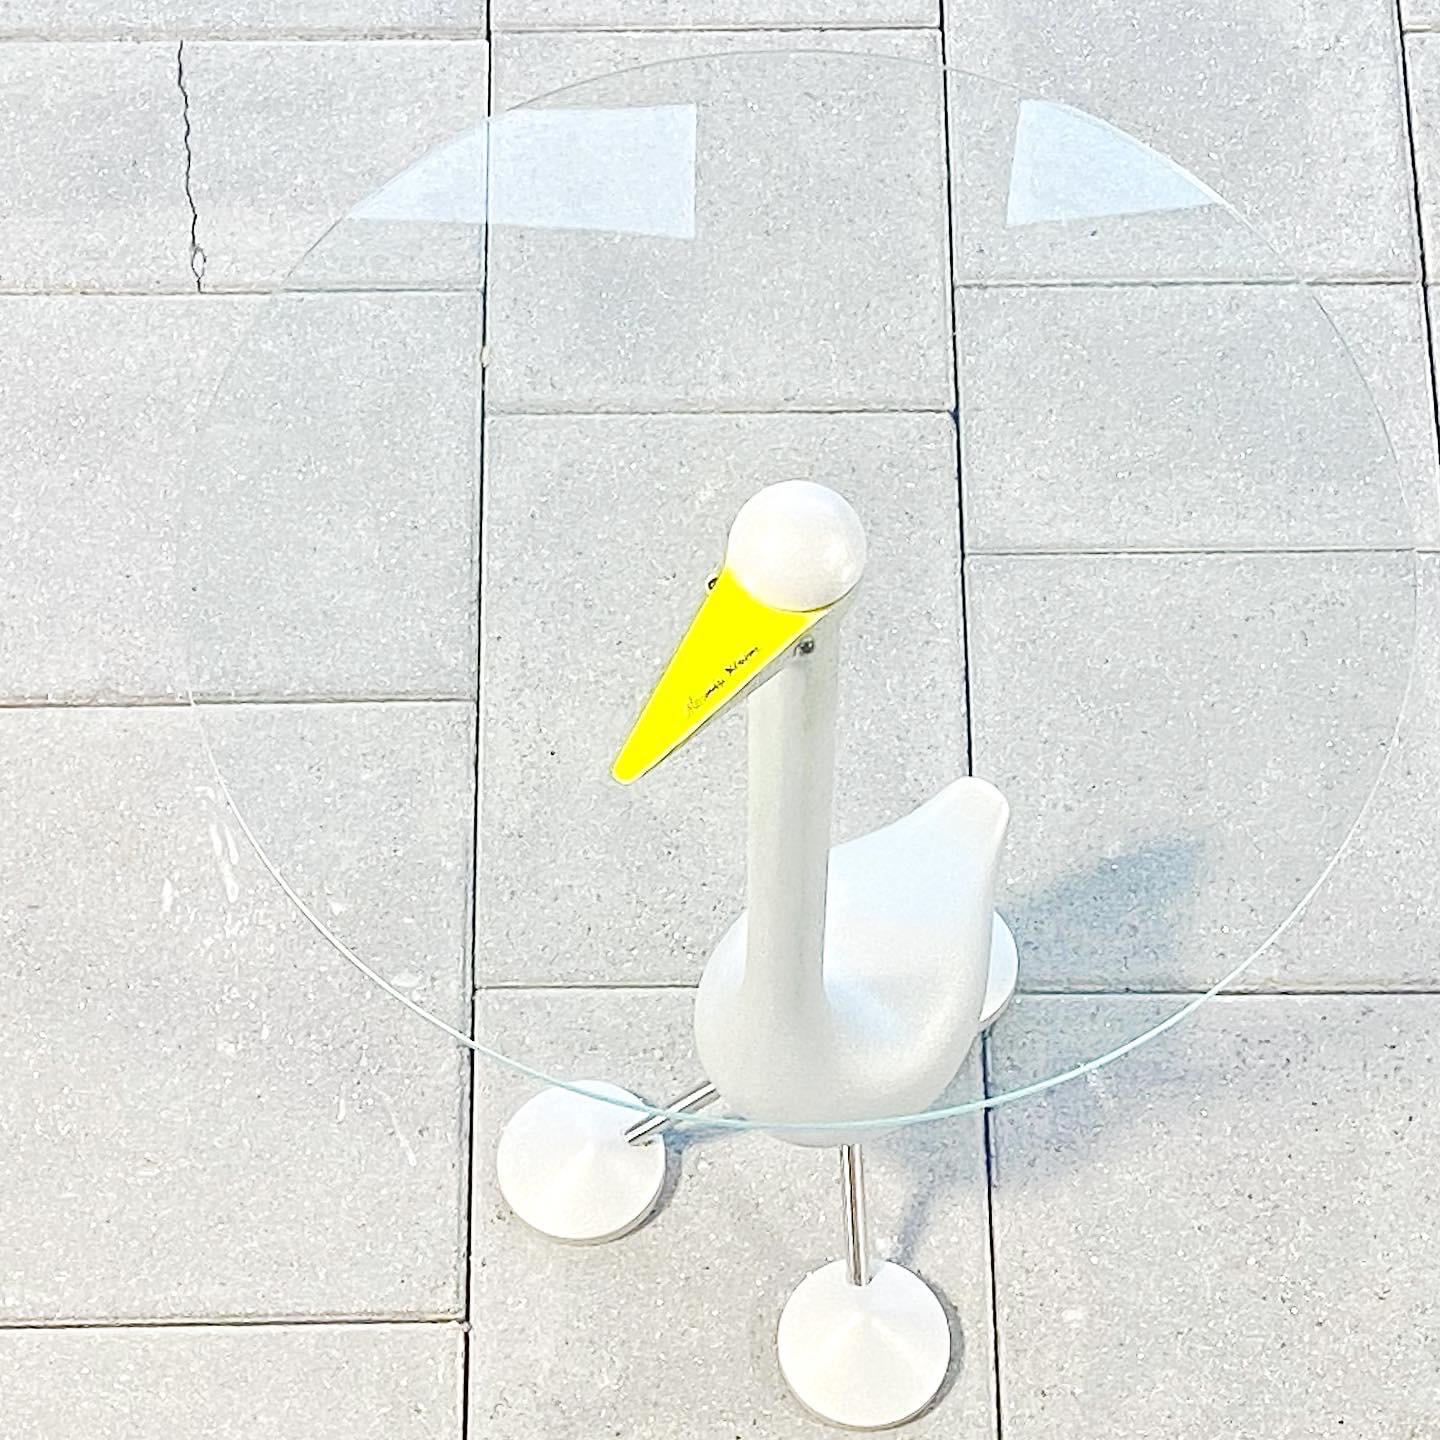 Postmoderner Tisch Sirfo Goose aus der Collection'S Zanotta Editioni, entworfen von Alessandro Mendini im Jahr 1986

hergestellt von Zanotta, Italien

Lackiertes Aluminium mit Glastischplatte, mit der Signatur von Alessandro Mendini.

Alessandro